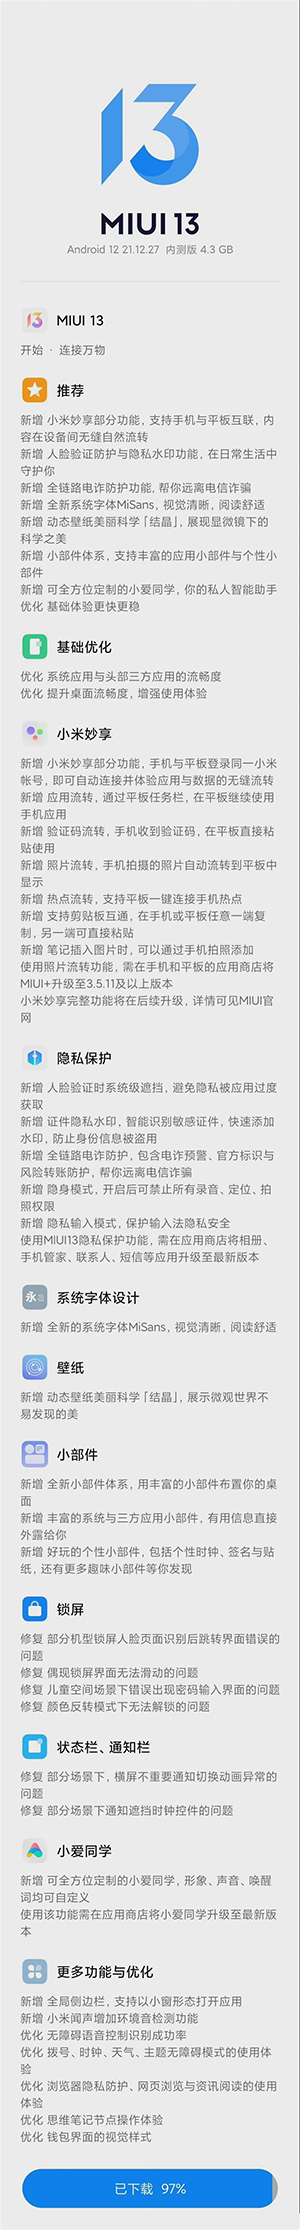 MIUI 13开发版开始推送：第一批已收到更新